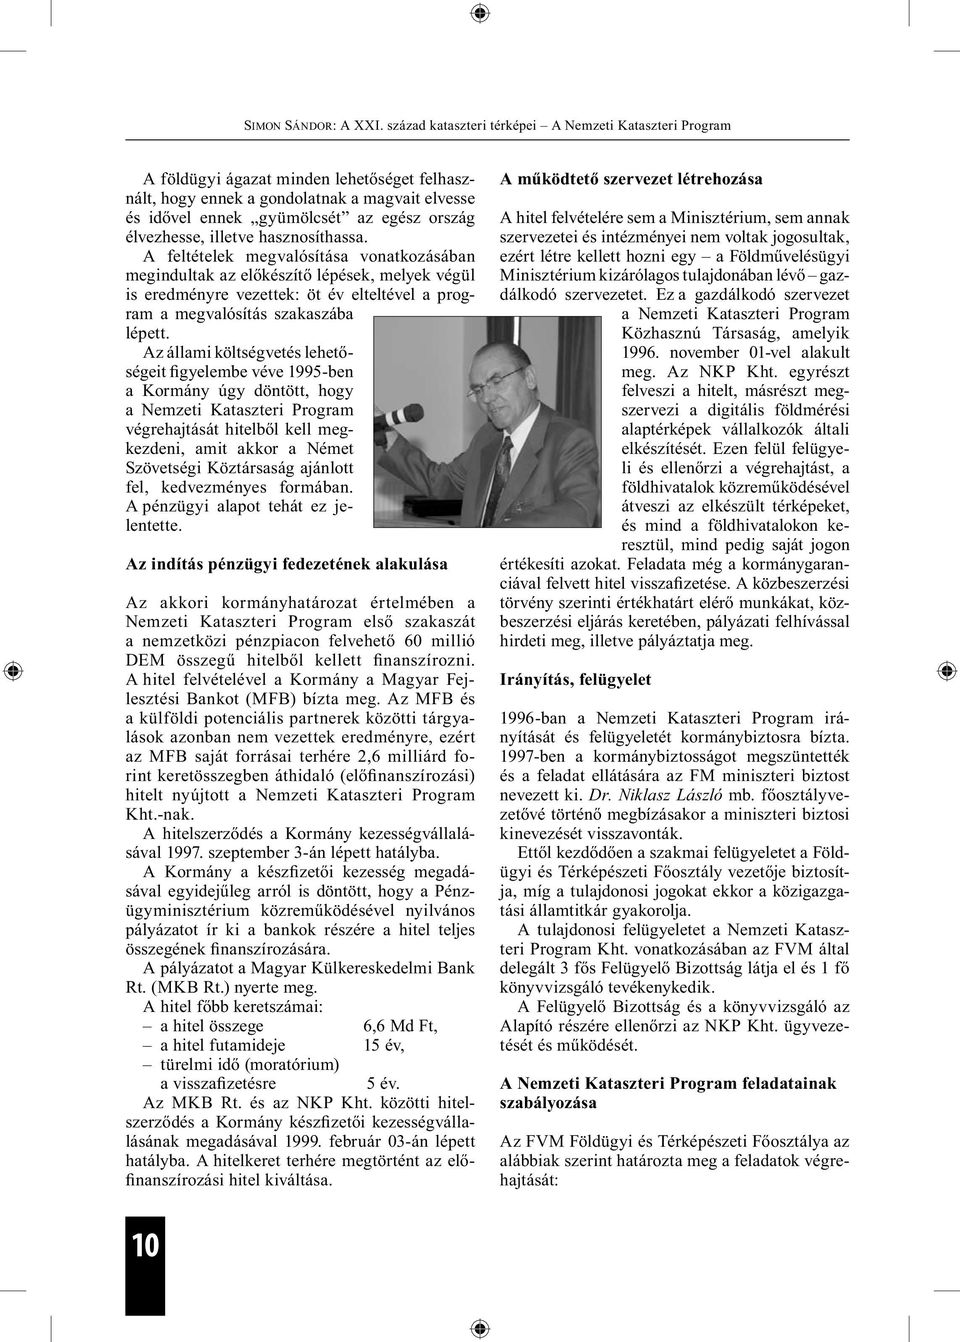 Az állami költségvetés lehetőségeit figyelembe véve 1995-ben a Kormány úgy döntött, hogy a Nemzeti Kataszteri Program végrehajtását hitelből kell megkezdeni, amit akkor a Német Szövetségi Köztársaság